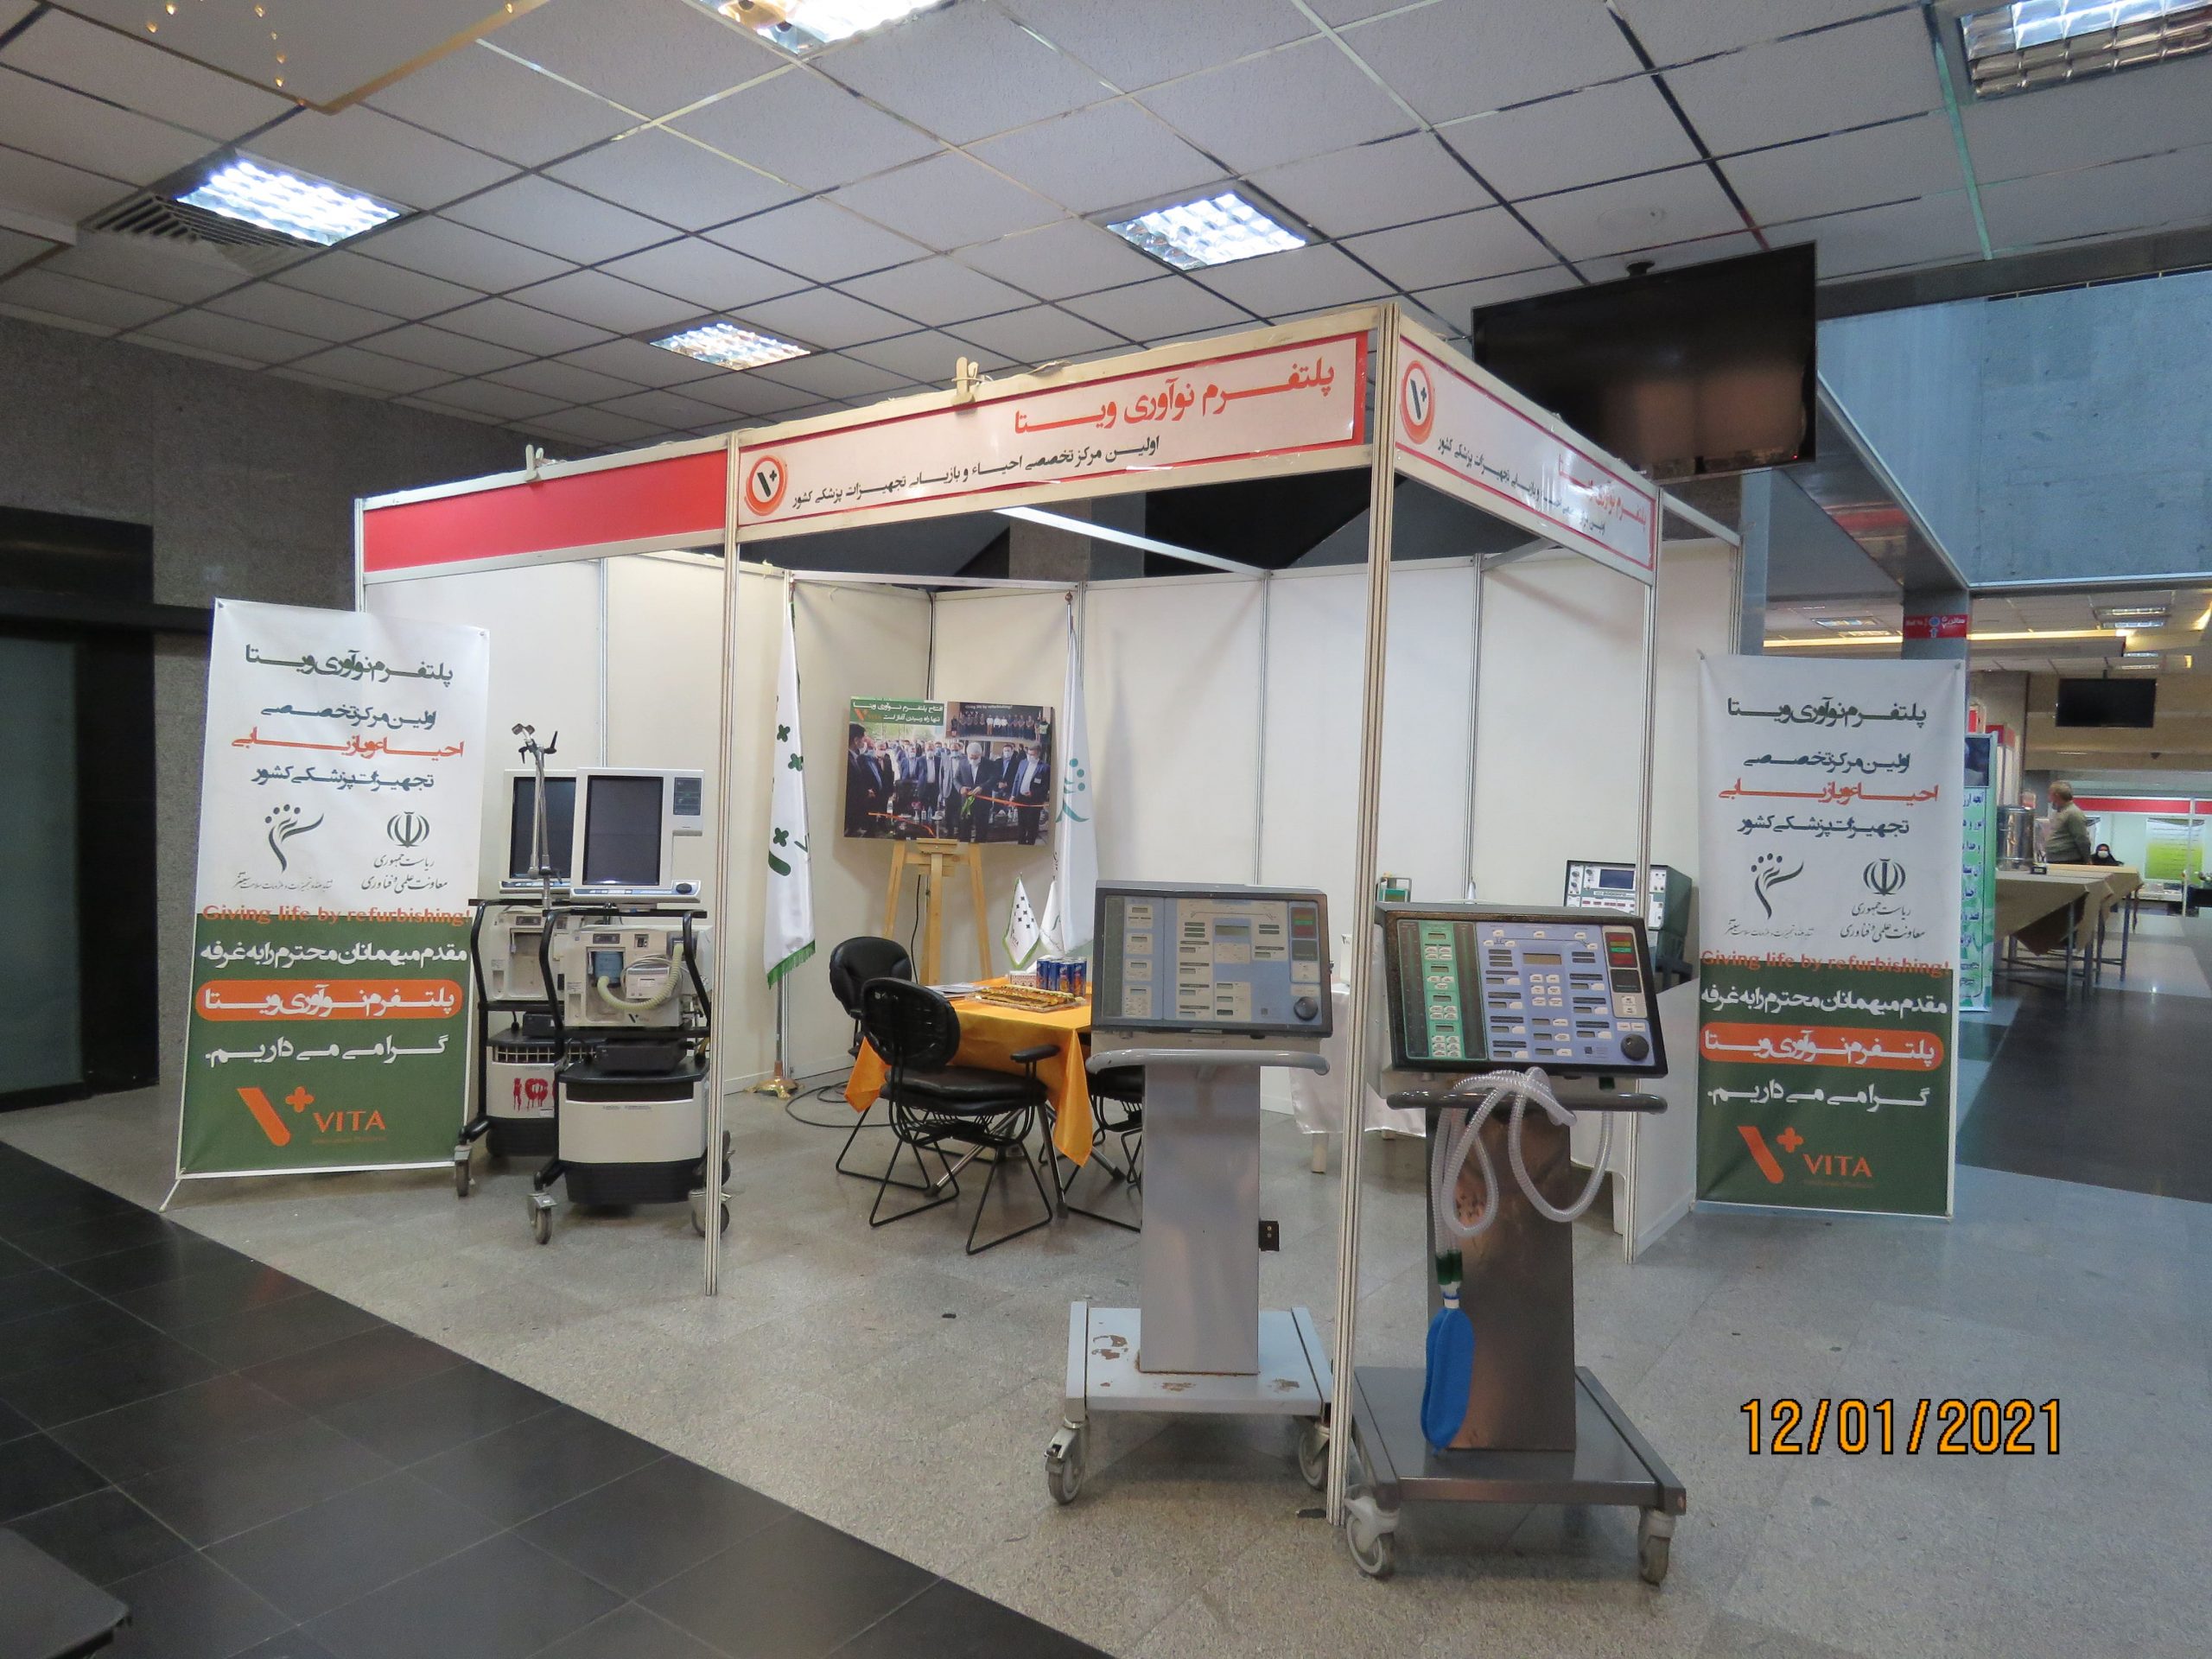 ویتا؛ اولین کارخانه احیا و بازگردانی تجهیزات پزشکی بیمارستانی در ایران